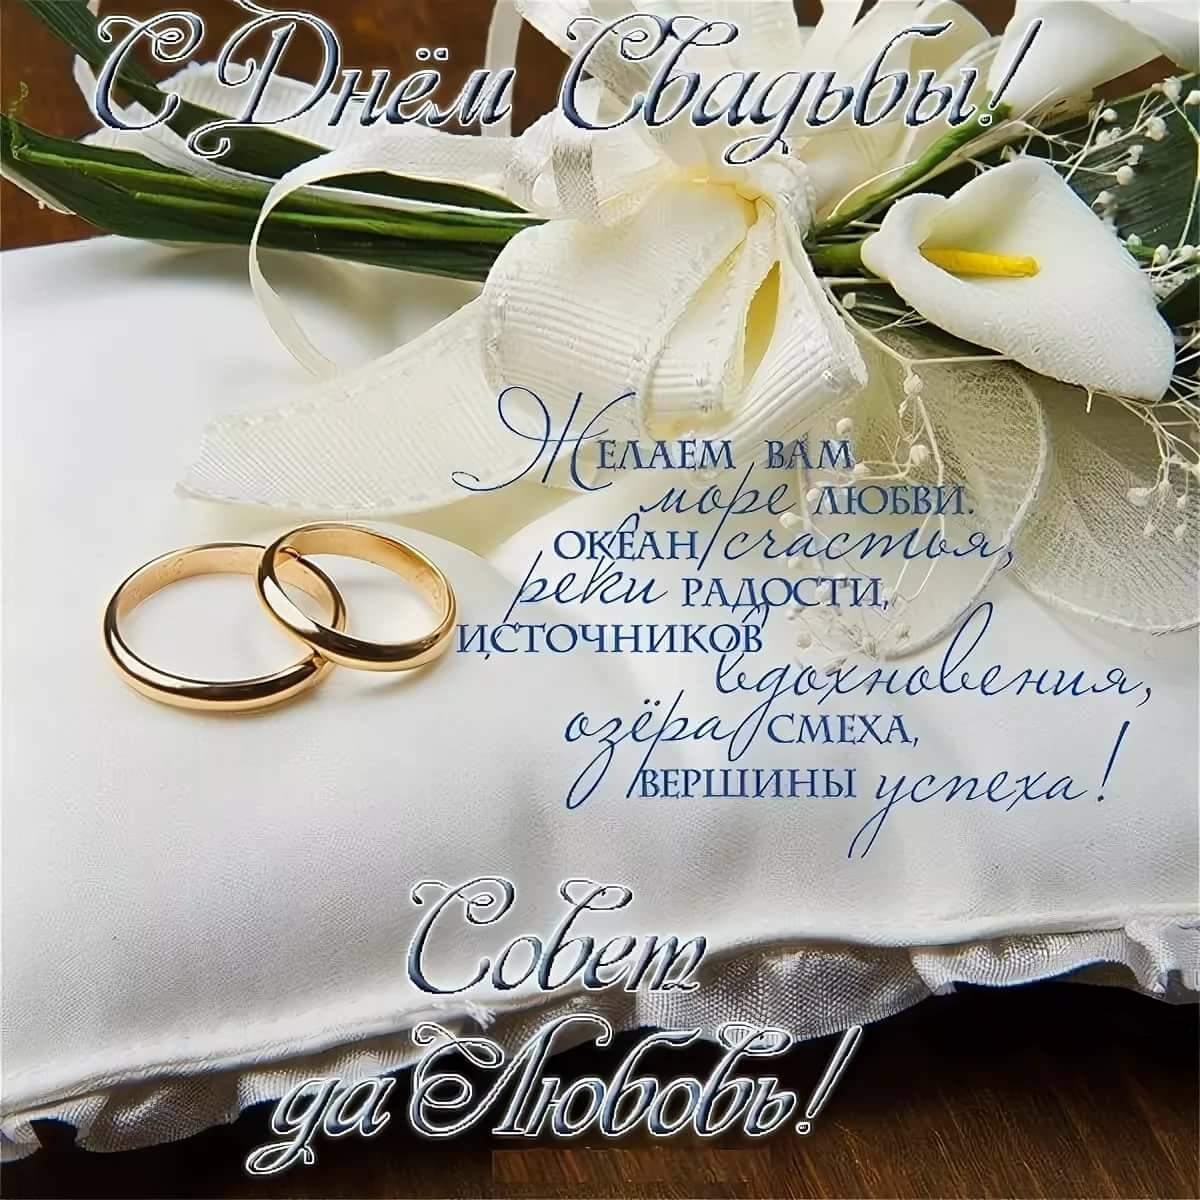 Поздравление с днем свадьбы 41